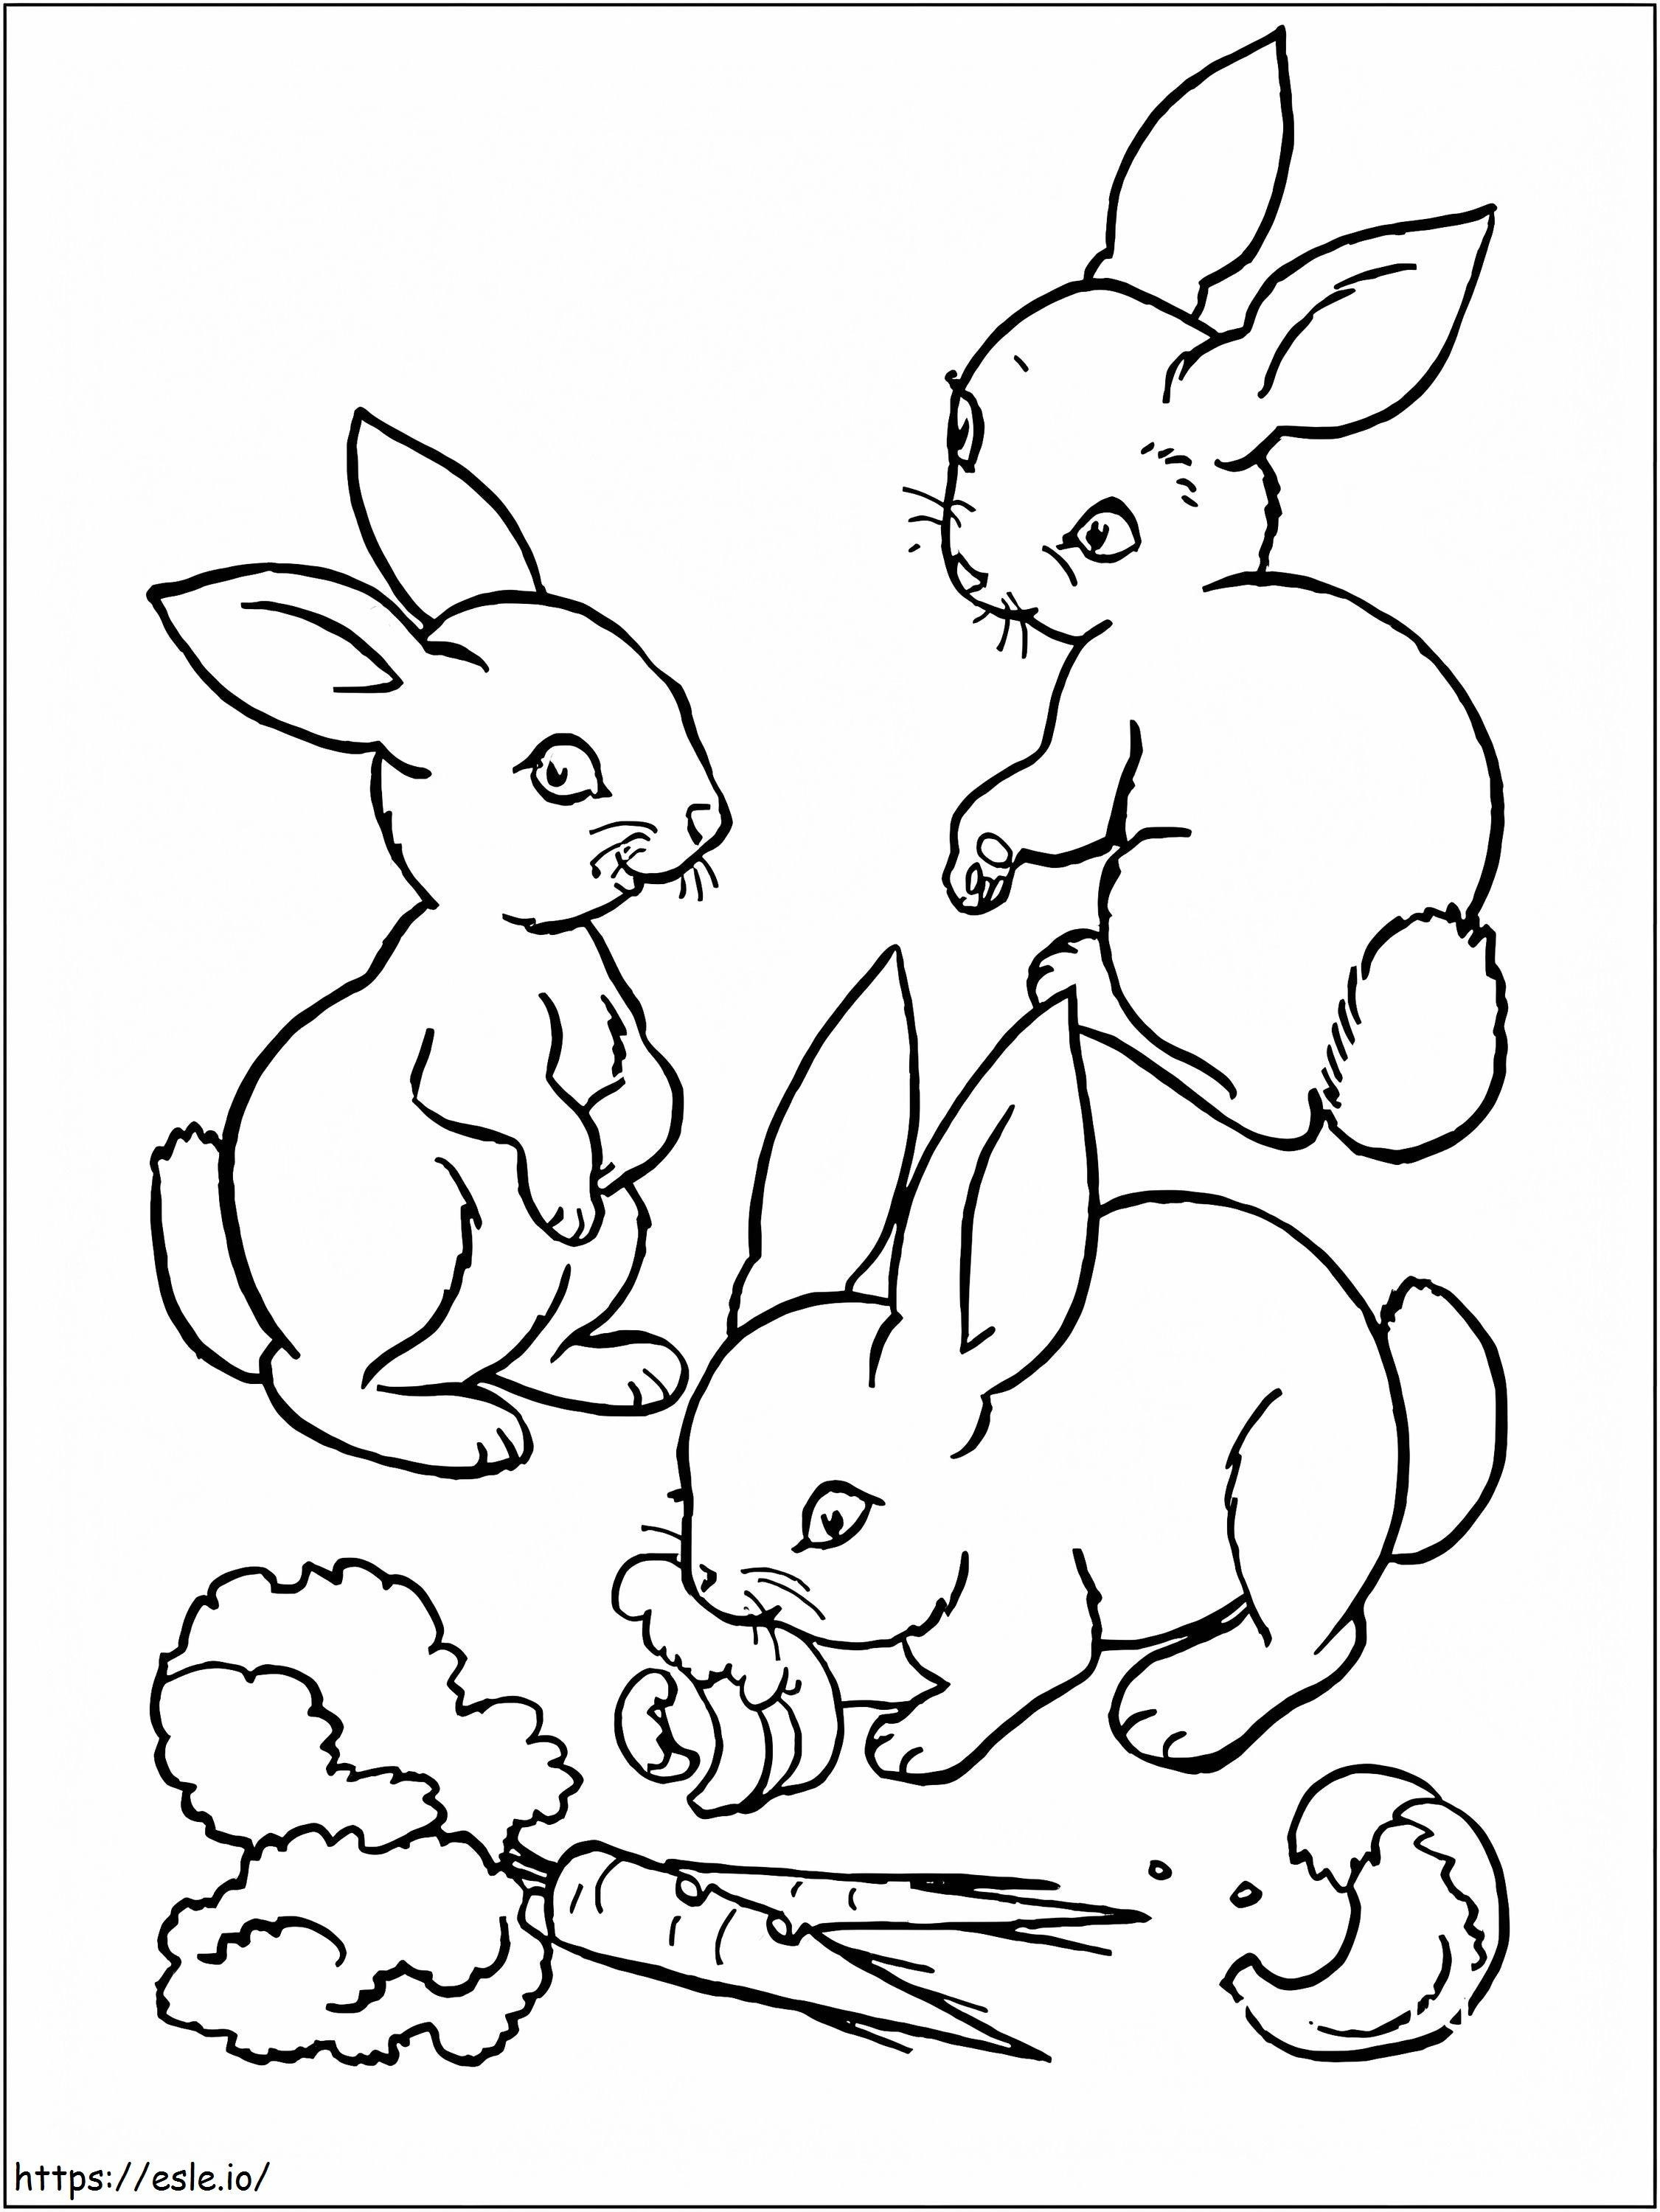 Drei Kaninchen ausmalbilder